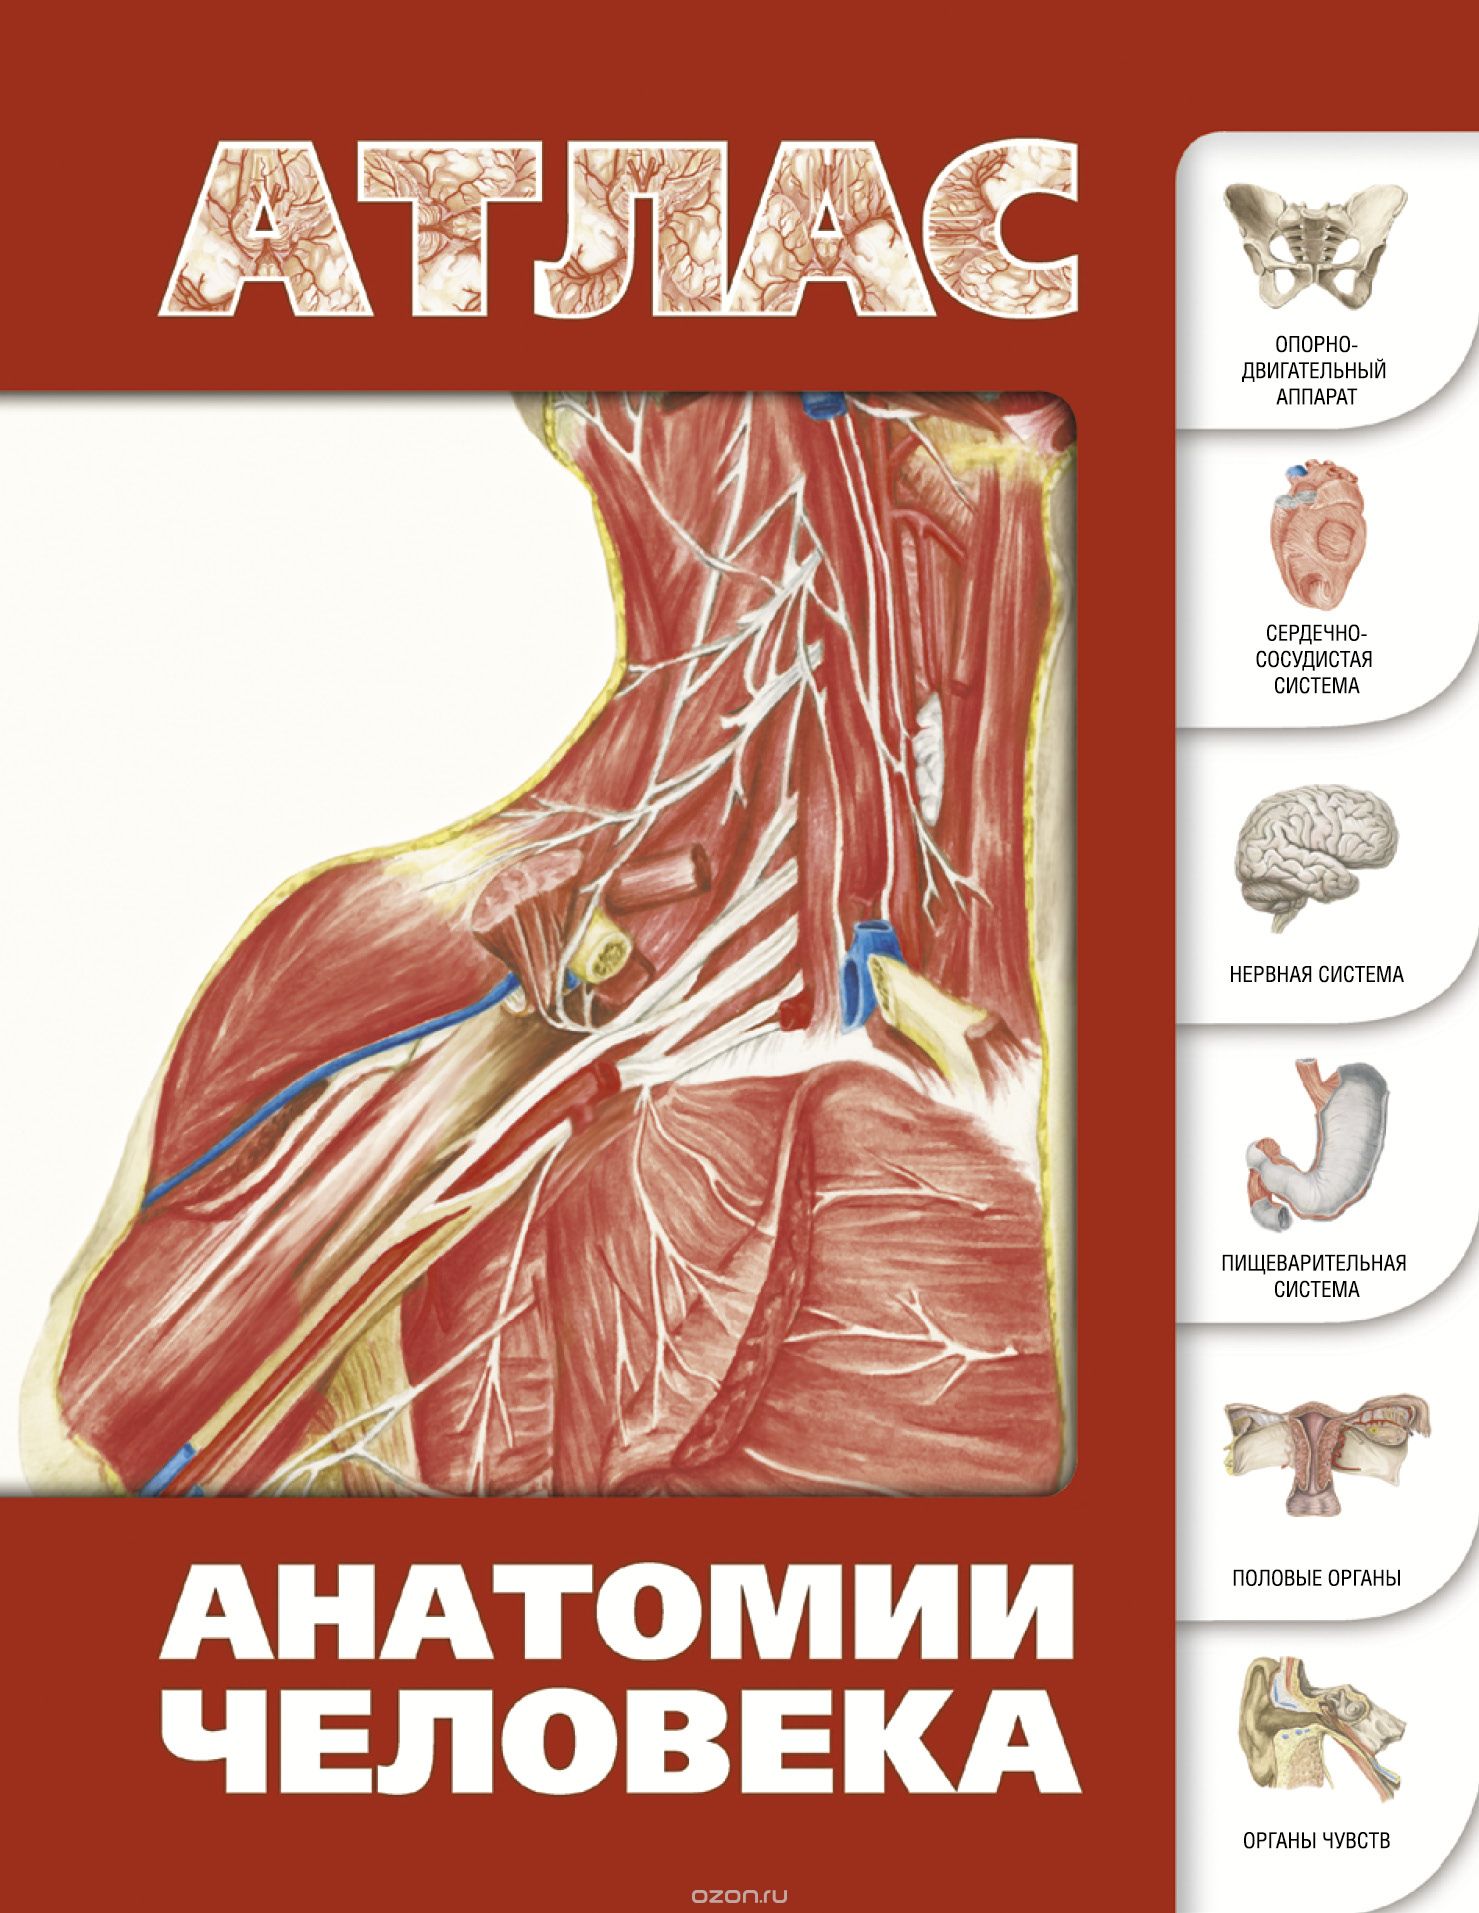 Скачать книгу "Атлас анатомии человека, С. С. Левкин"